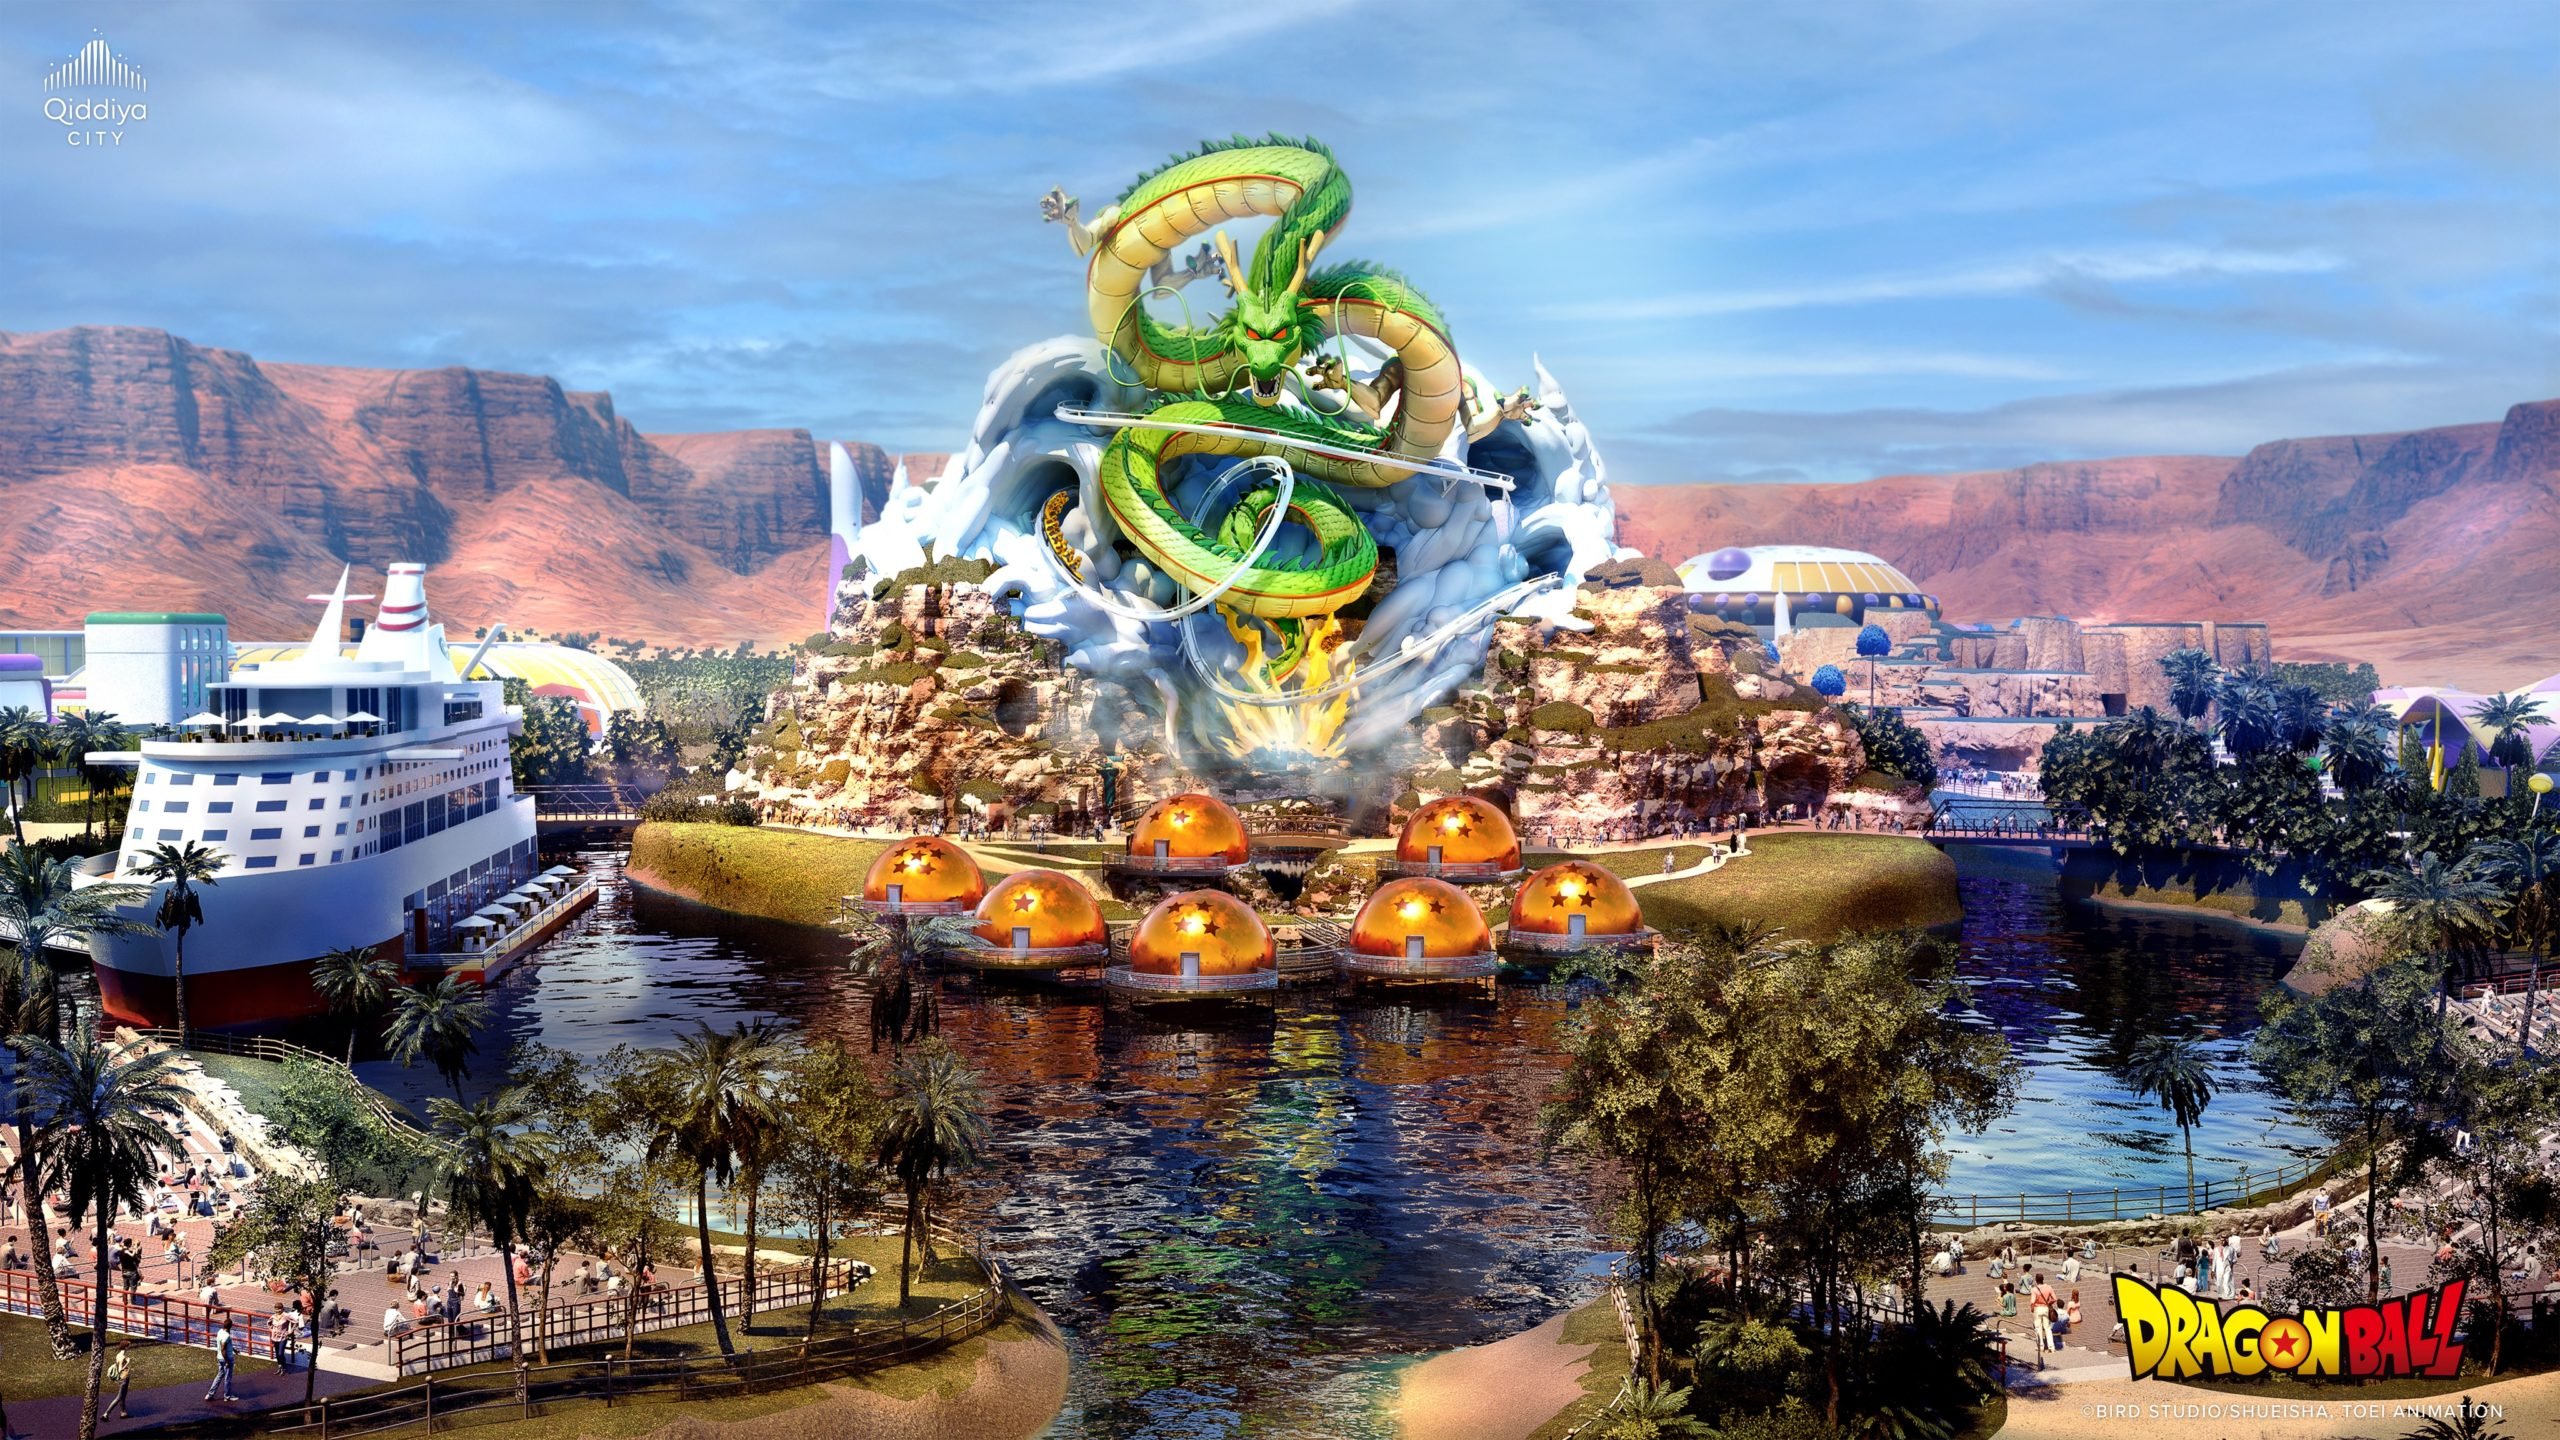 Primer parque temático de ‘Dragon Ball’ abrirá sus puertas en el megaproyecto saudí ‘Qiddiya’